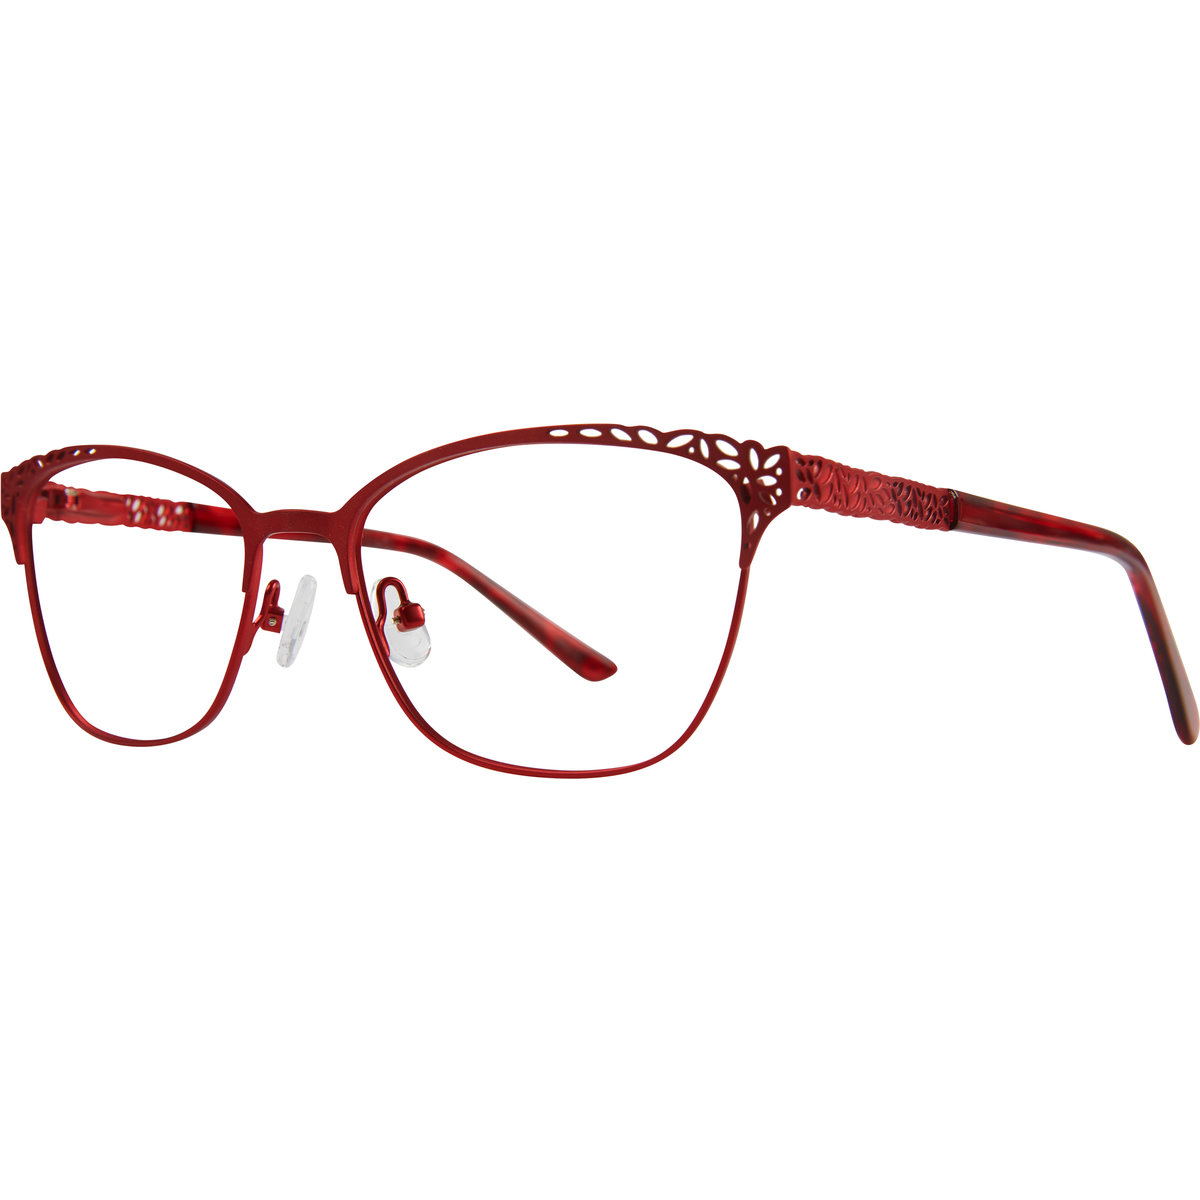 Freya Molly Glasses | Buy Glasses, Glasses Frames & Sunglasses Online ...